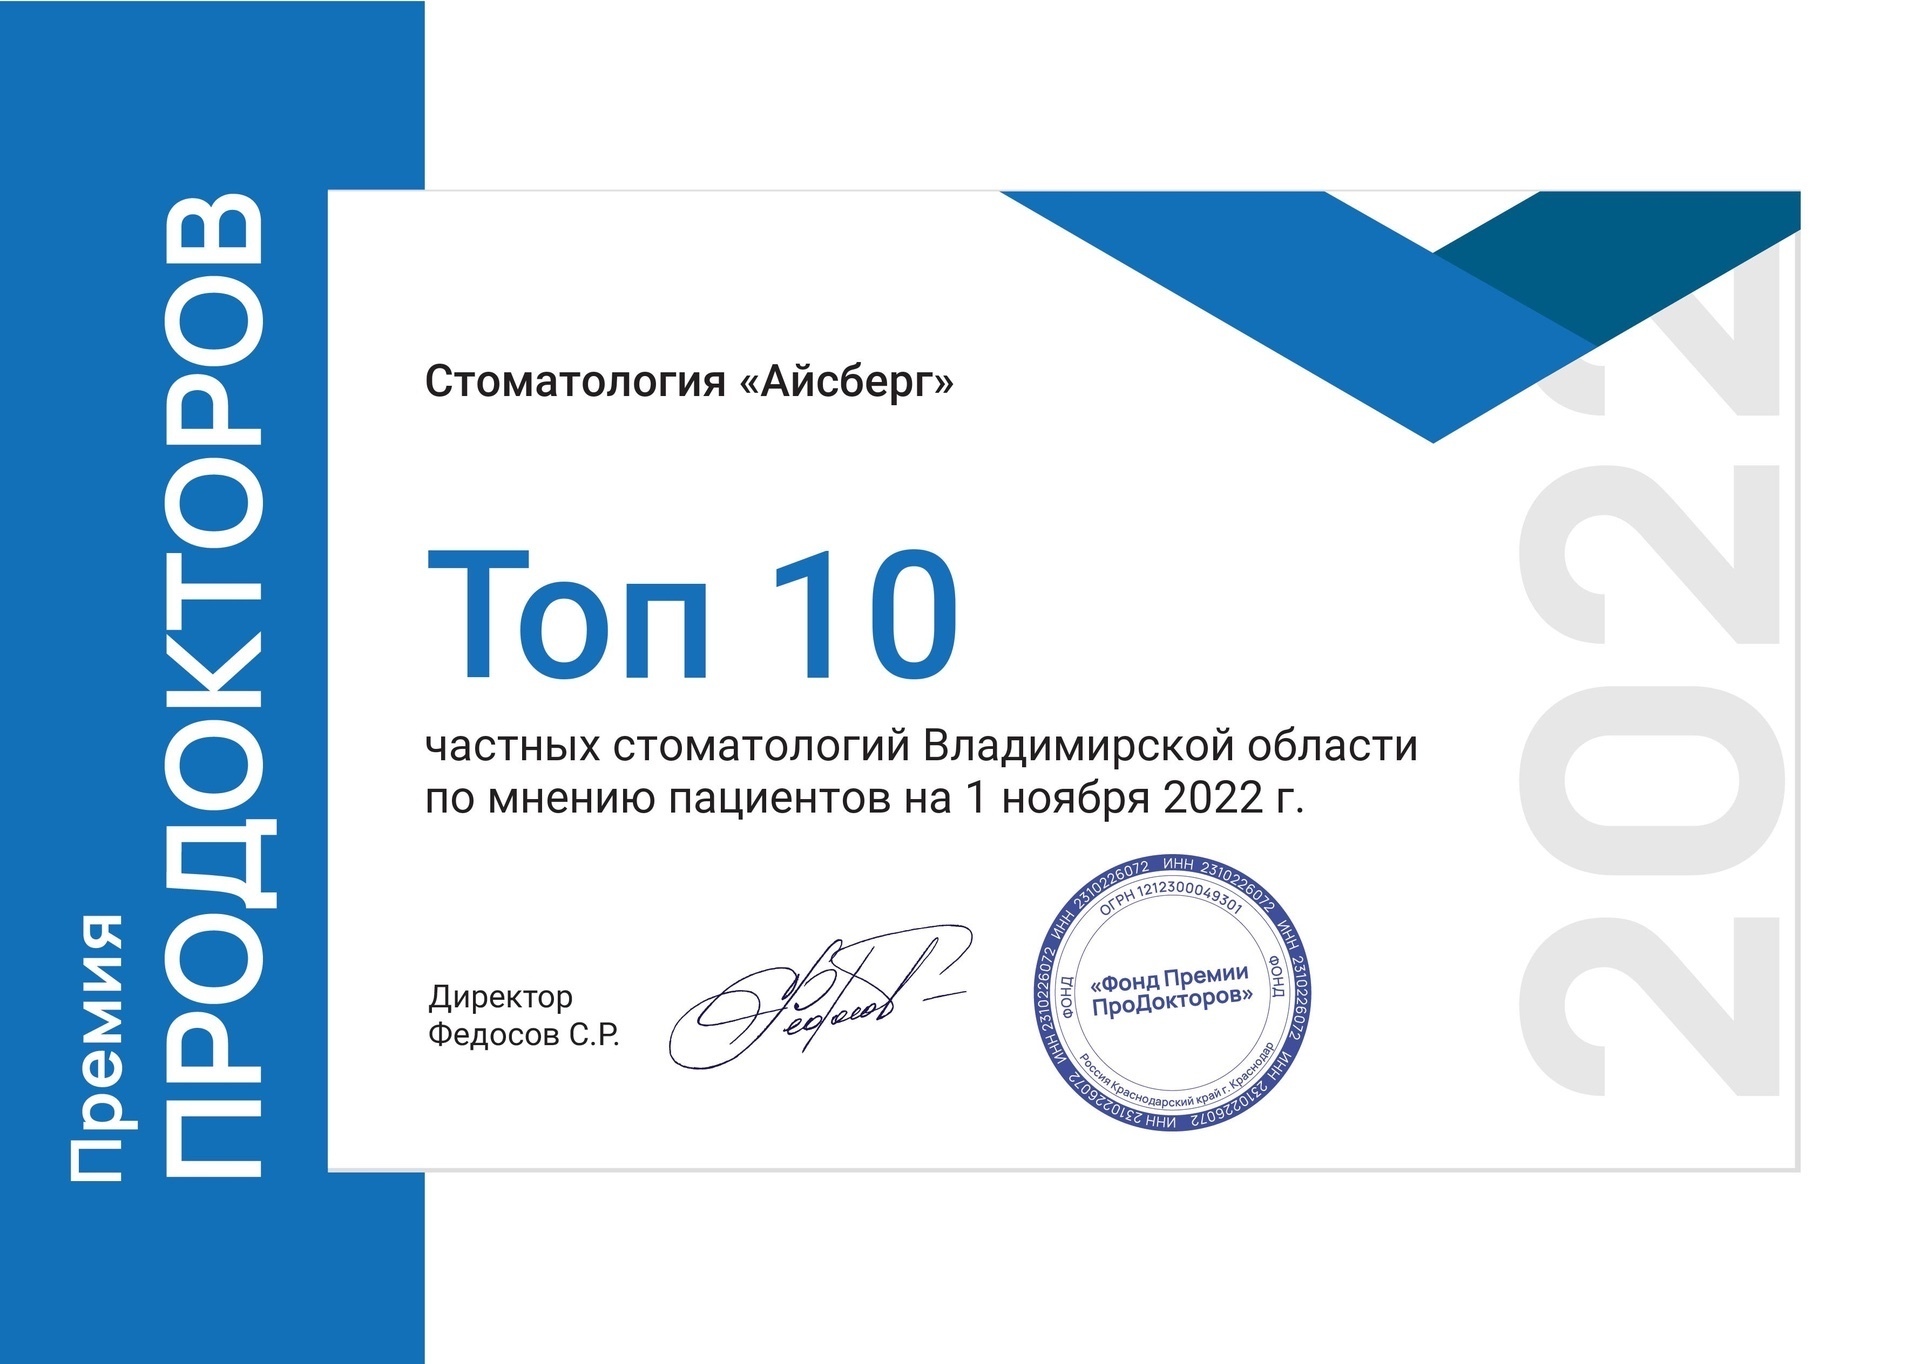 Продокторов ТОП 10 Владимирской области